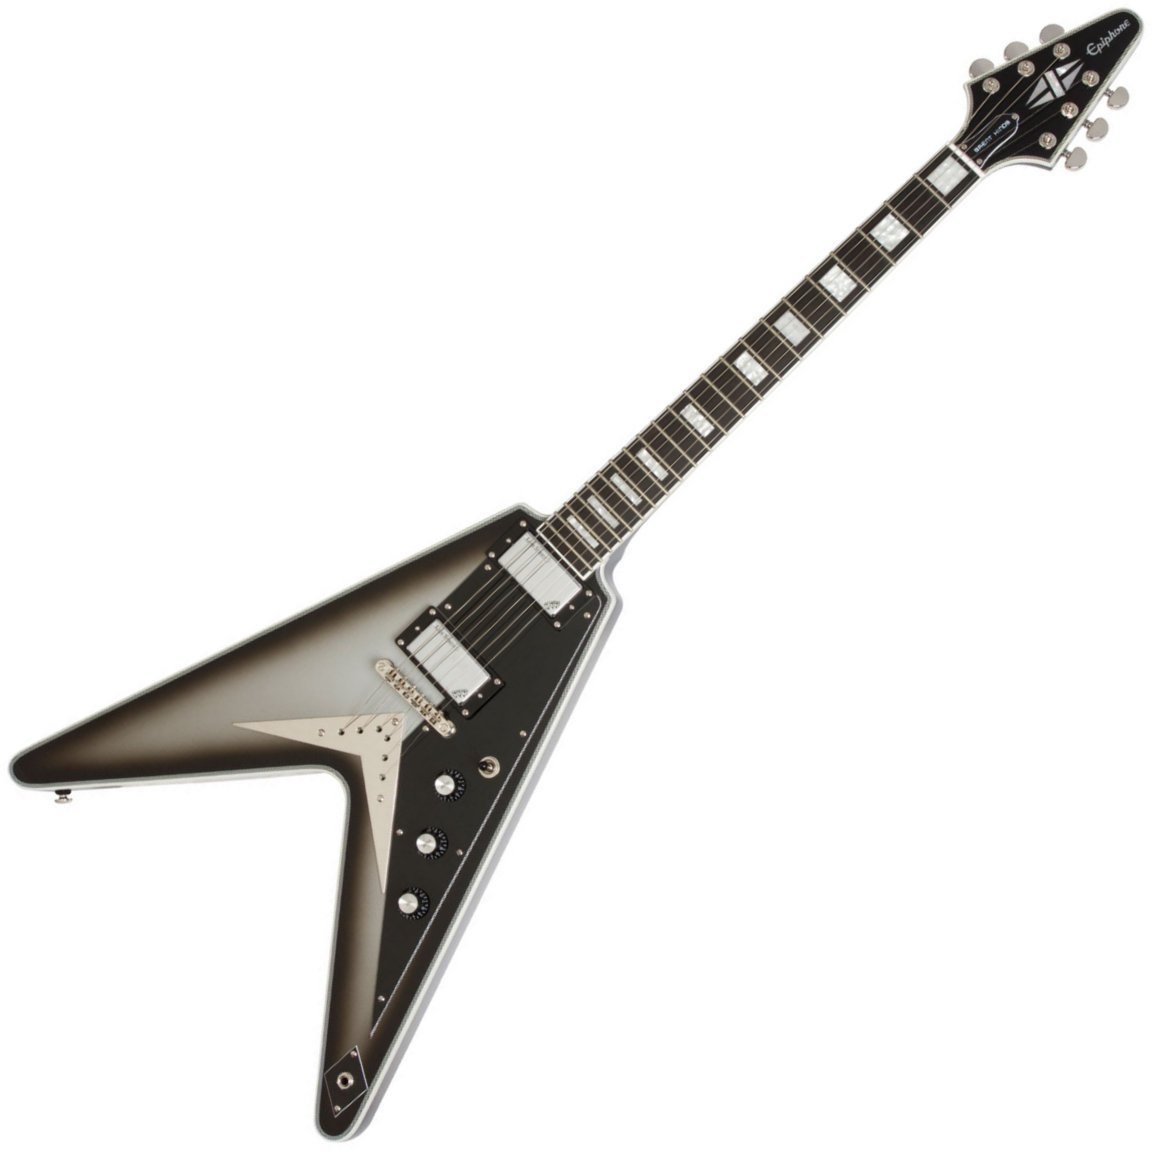 E-Gitarre Epiphone Brent Hinds Flying V Custom Limited Edition - Silverburst